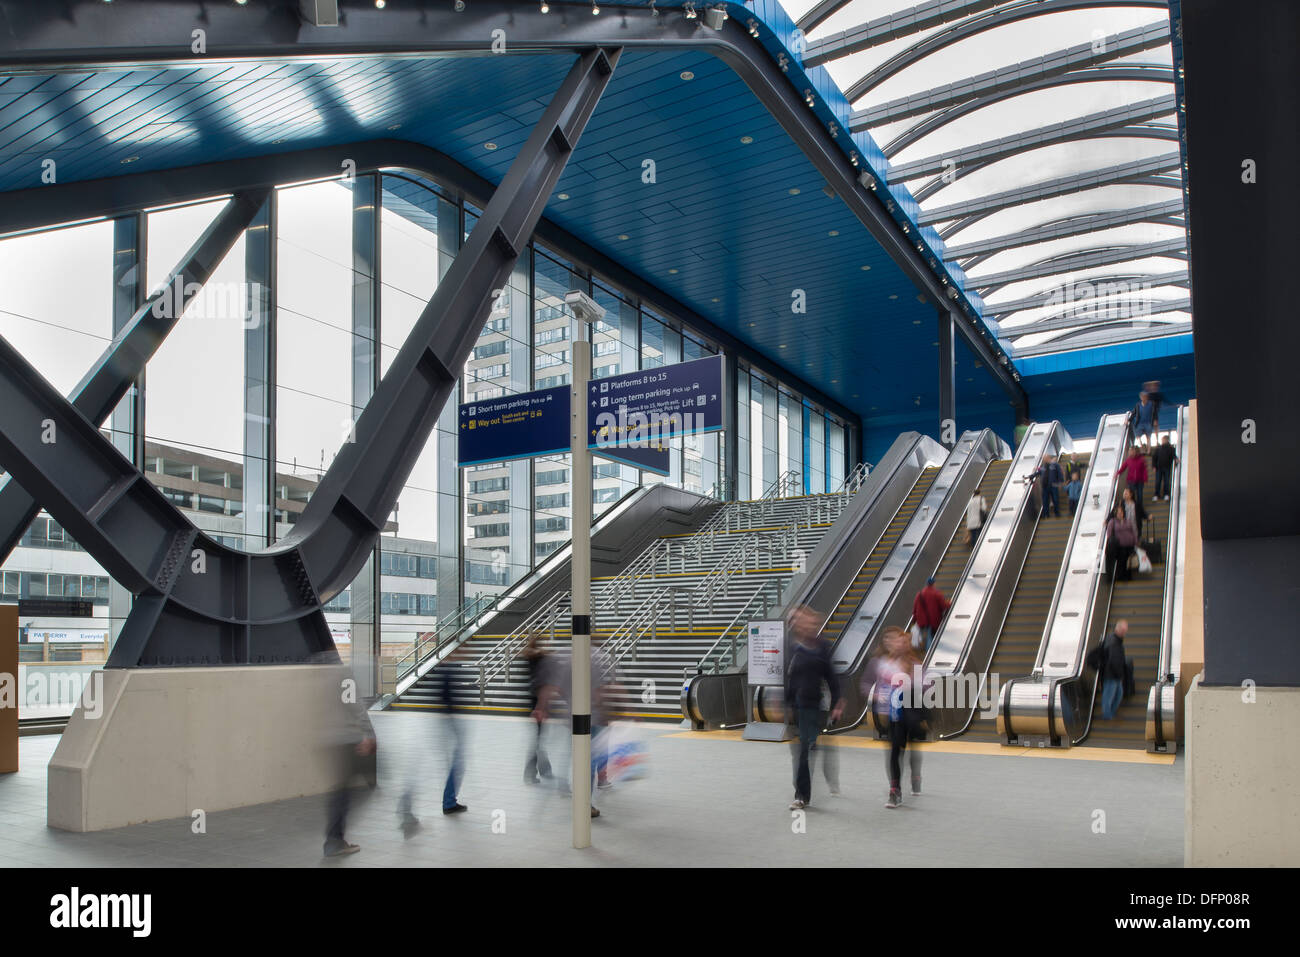 La lettura di stazione ferroviaria, Reading, Regno Unito. Architetto: Grimshaw, 2015. Ingresso con scale e ascensori. Foto Stock